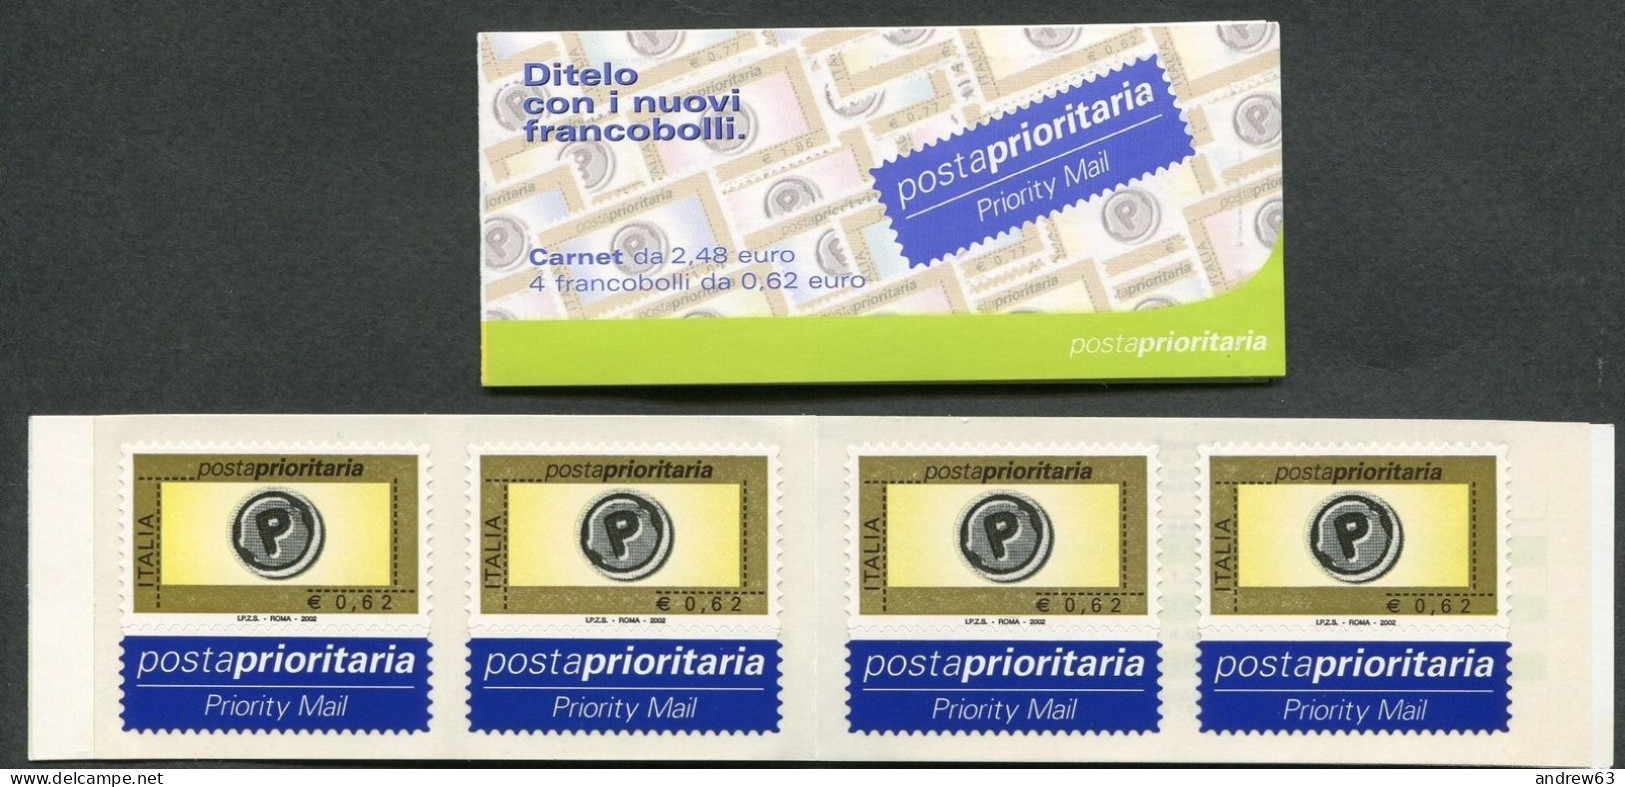 ITALIA - 2002 - Libretto Posta Prioritaria Carnet Da 4 Francobolli Di € 0,62 Integri - Nuovo - Postzegelboekjes